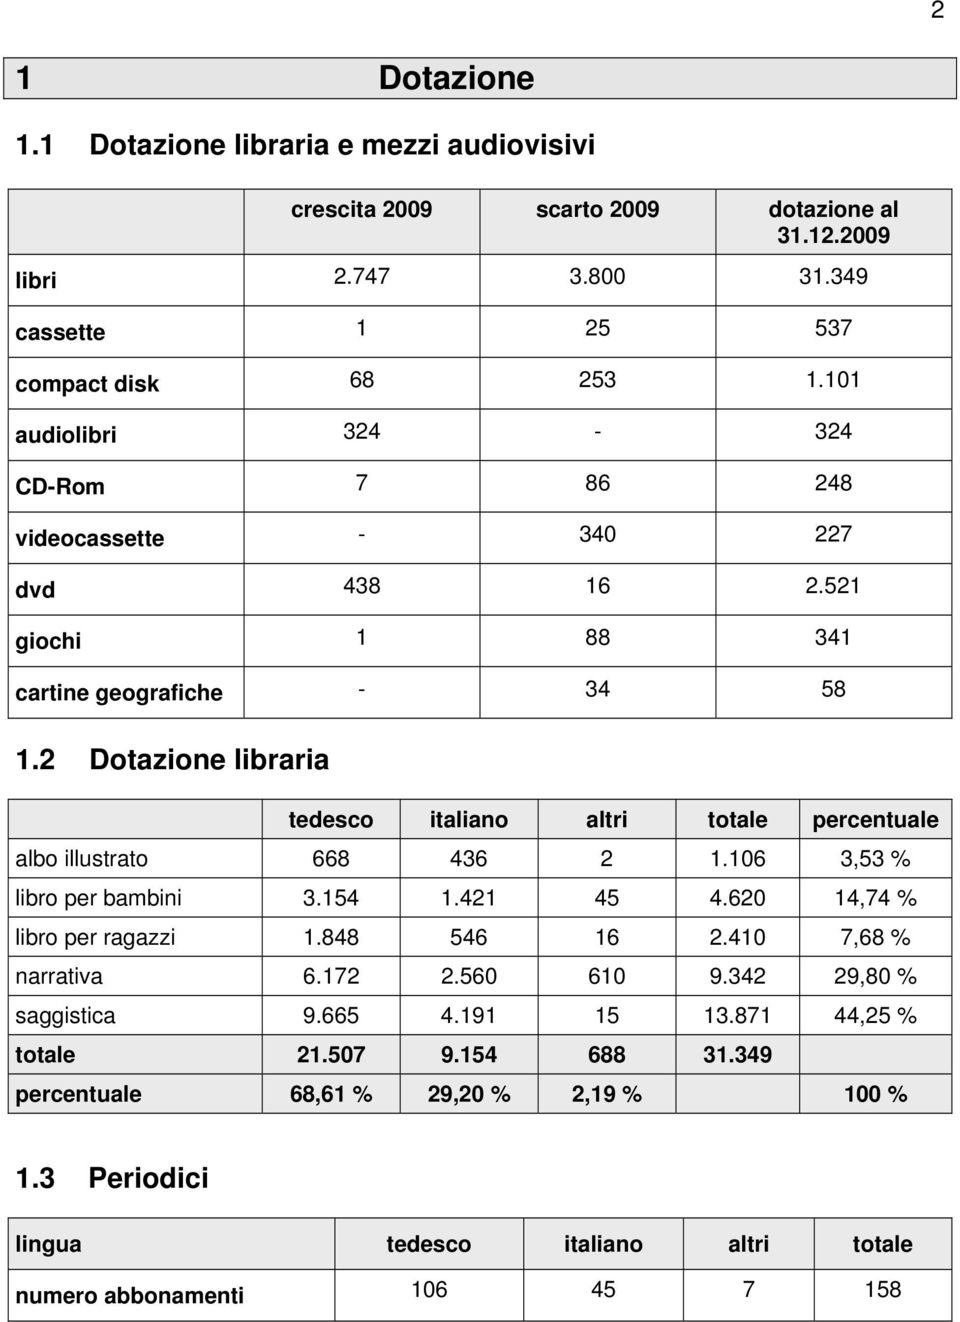 2 Dotazione libraria tedesco italiano altri totale percentuale albo illustrato 668 436 2 1.106 3,53 % libro per bambini 3.154 1.421 45 4.620 14,74 % libro per ragazzi 1.